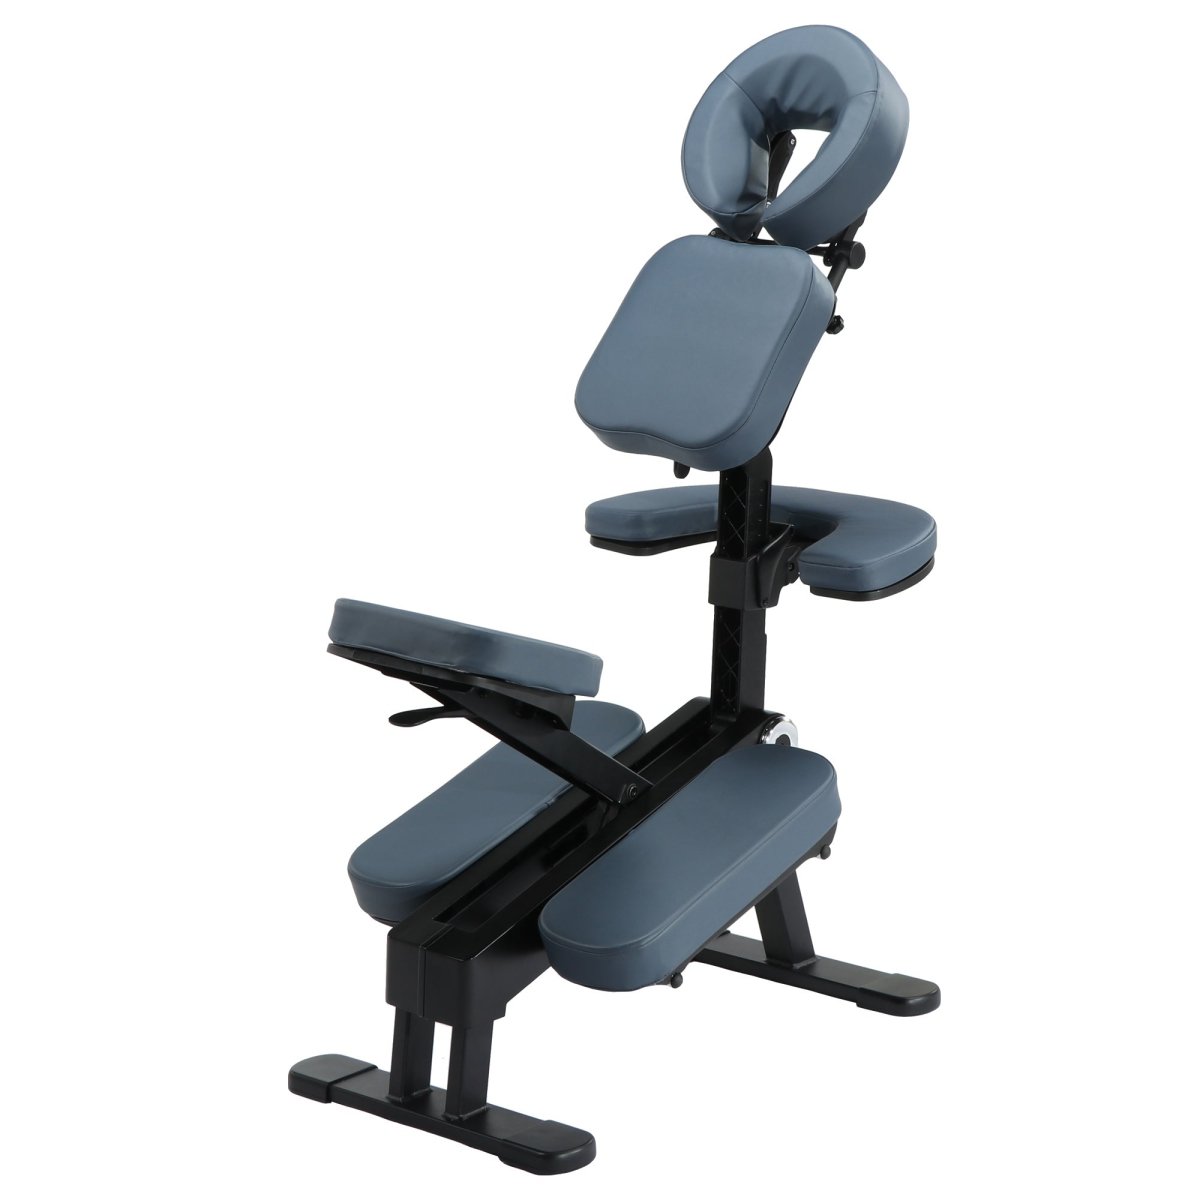 Gymlane Portable Chiropractic Massage Chair - GreenLife-Portable Chiropratic chair